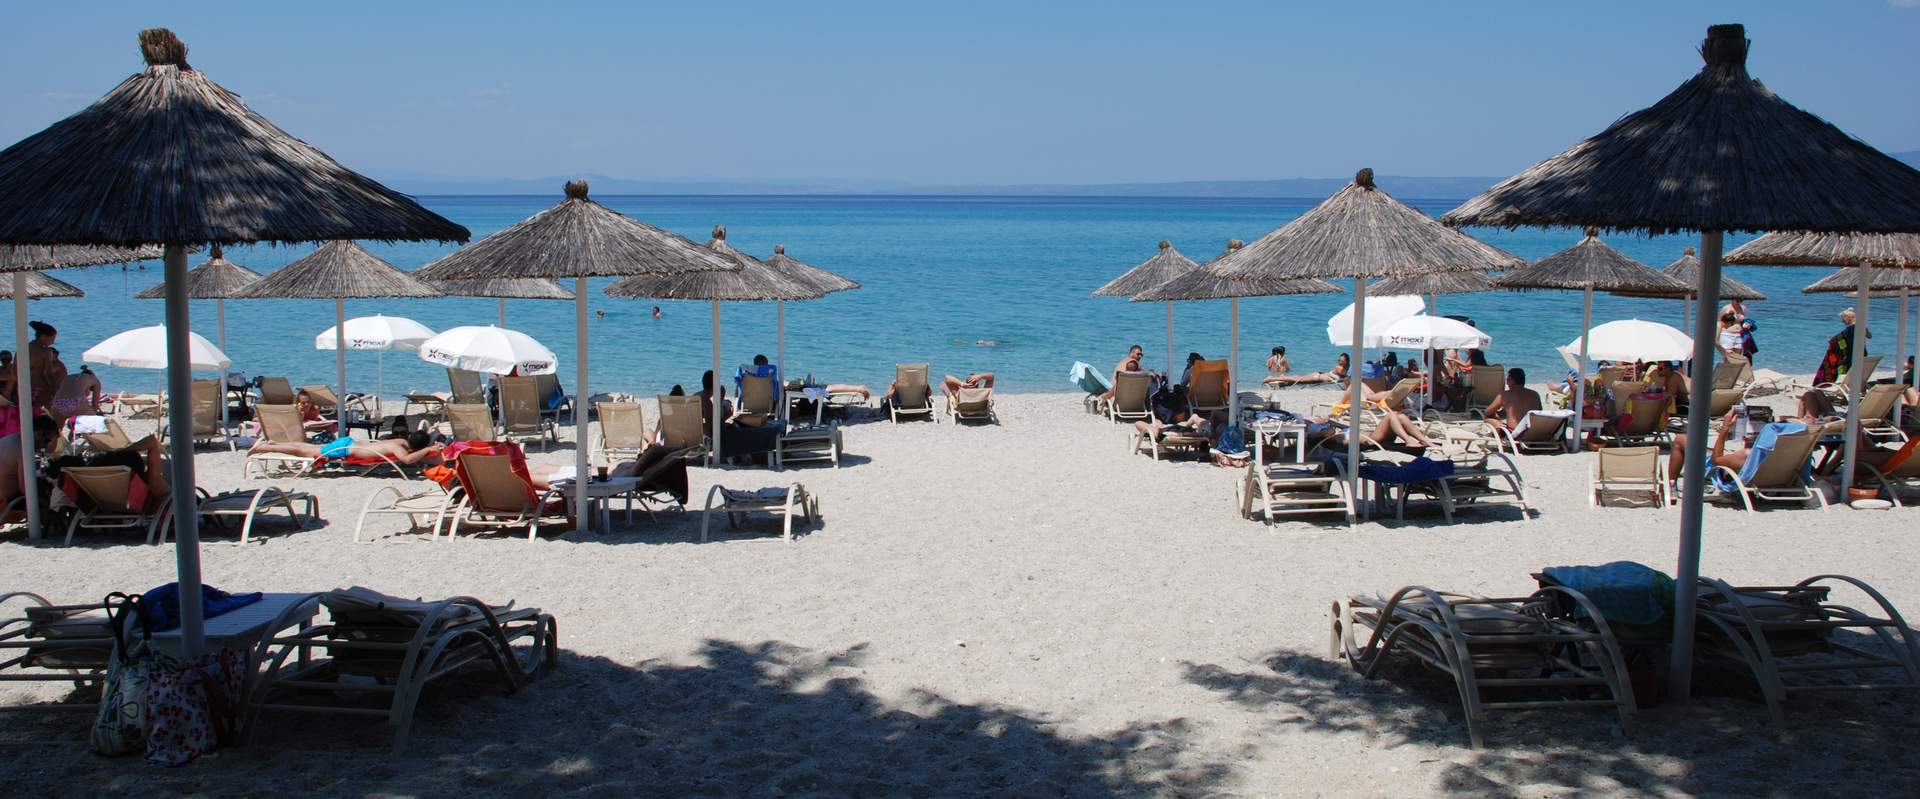 Γλαρόκαβος παραλία, Κασσάνδρα, Χαλκιδική, Ελλάδα